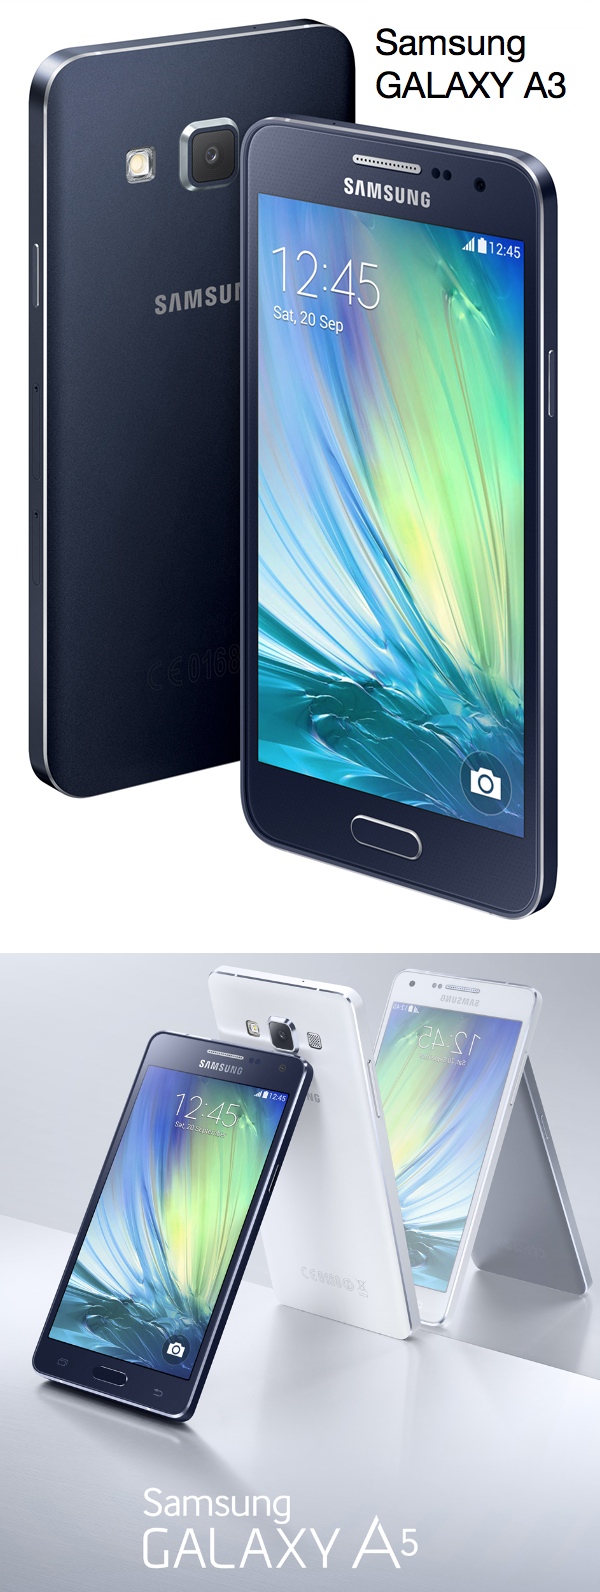 Samsung presenta los nuevos Galaxy A5 y A3